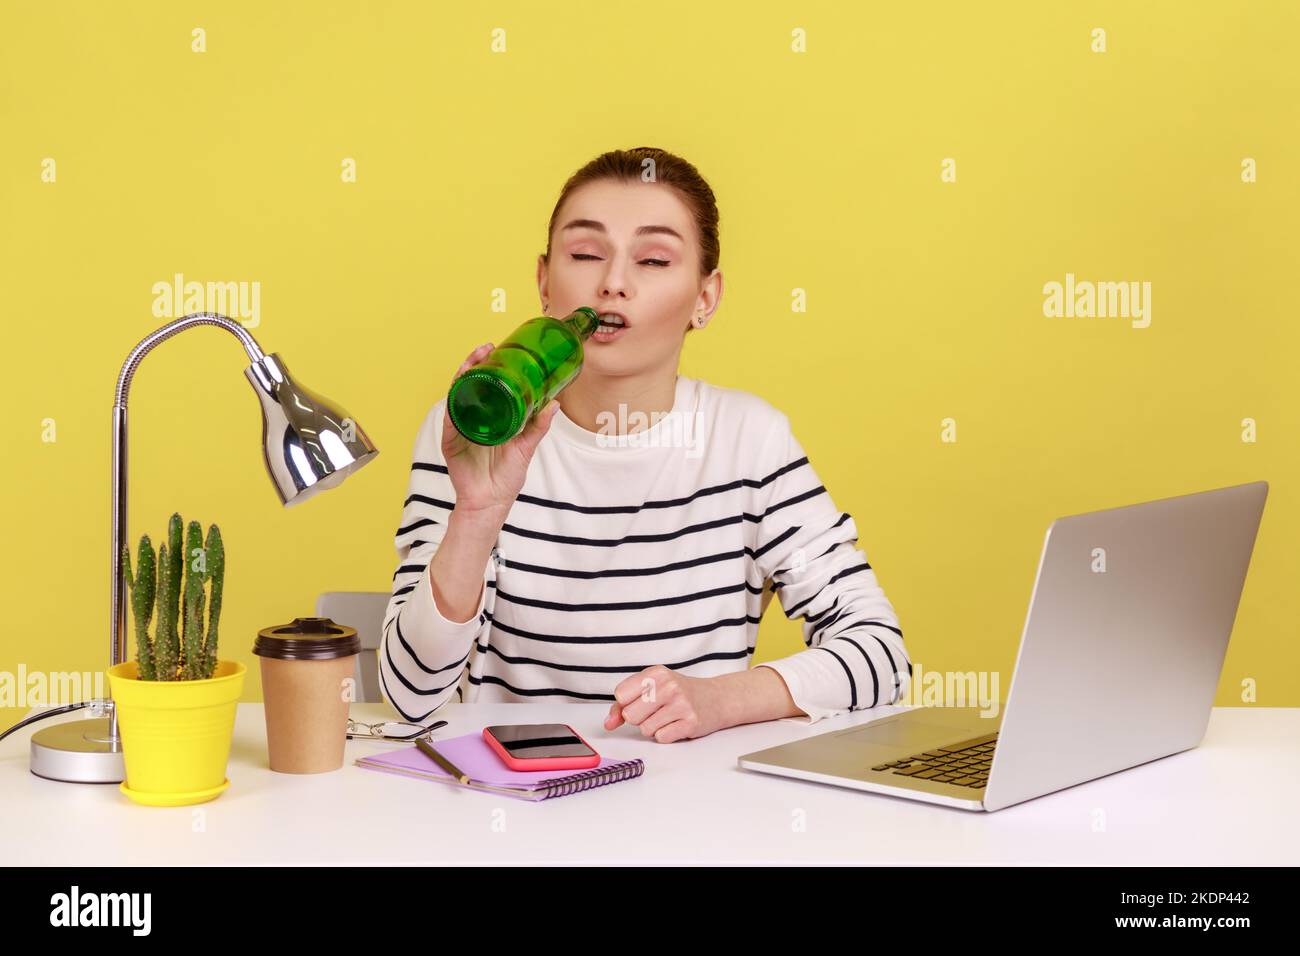 Porträt einer jungen erwachsenen Frau, die Bier trinkt, mit geschlossenen Augen am Arbeitsplatz sitzt und während des Arbeitstages betrunken ist. Studio-Innenaufnahme isoliert auf gelbem Hintergrund. Stockfoto